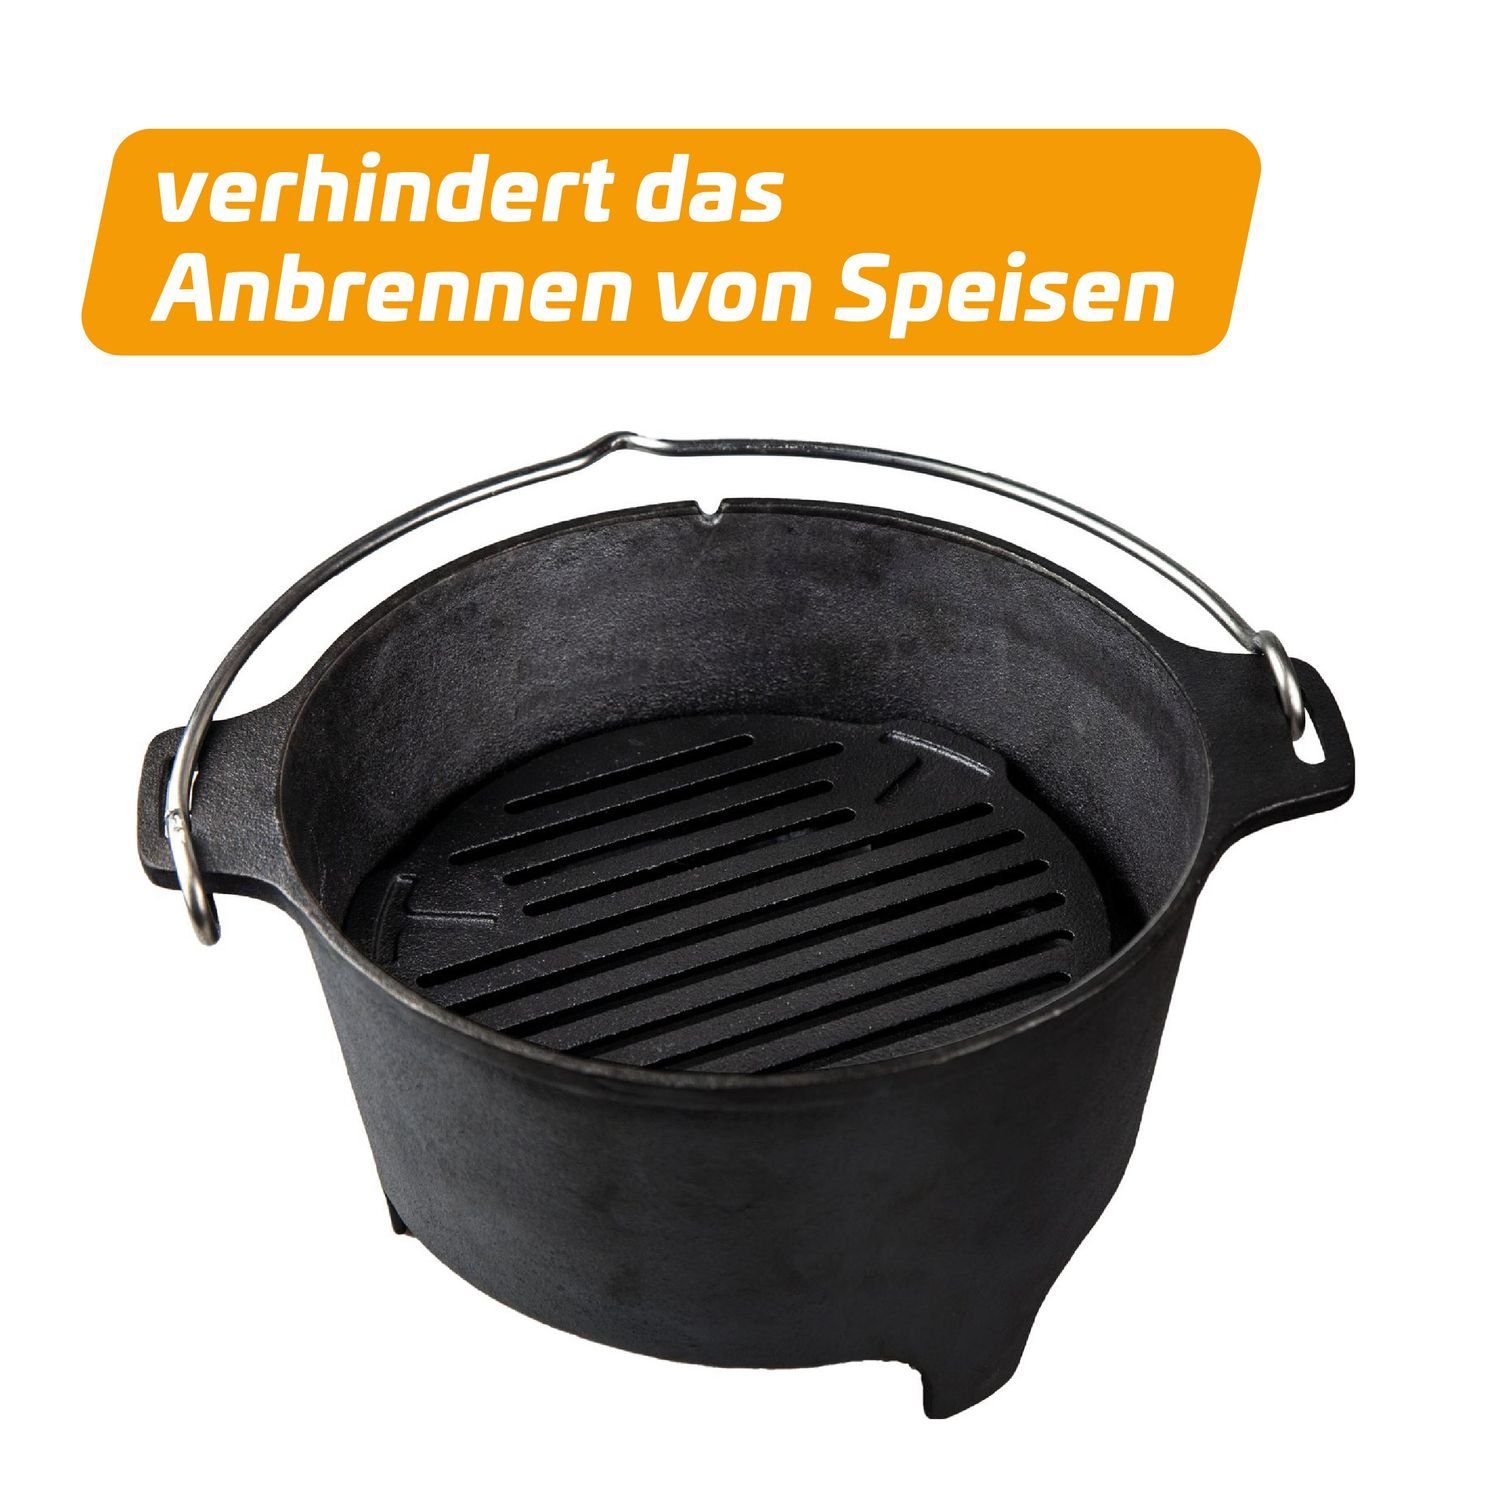 Dutch DO9 Feuerrost für Grillfürst Einsatz - Oven Bratentopf Grillfürst